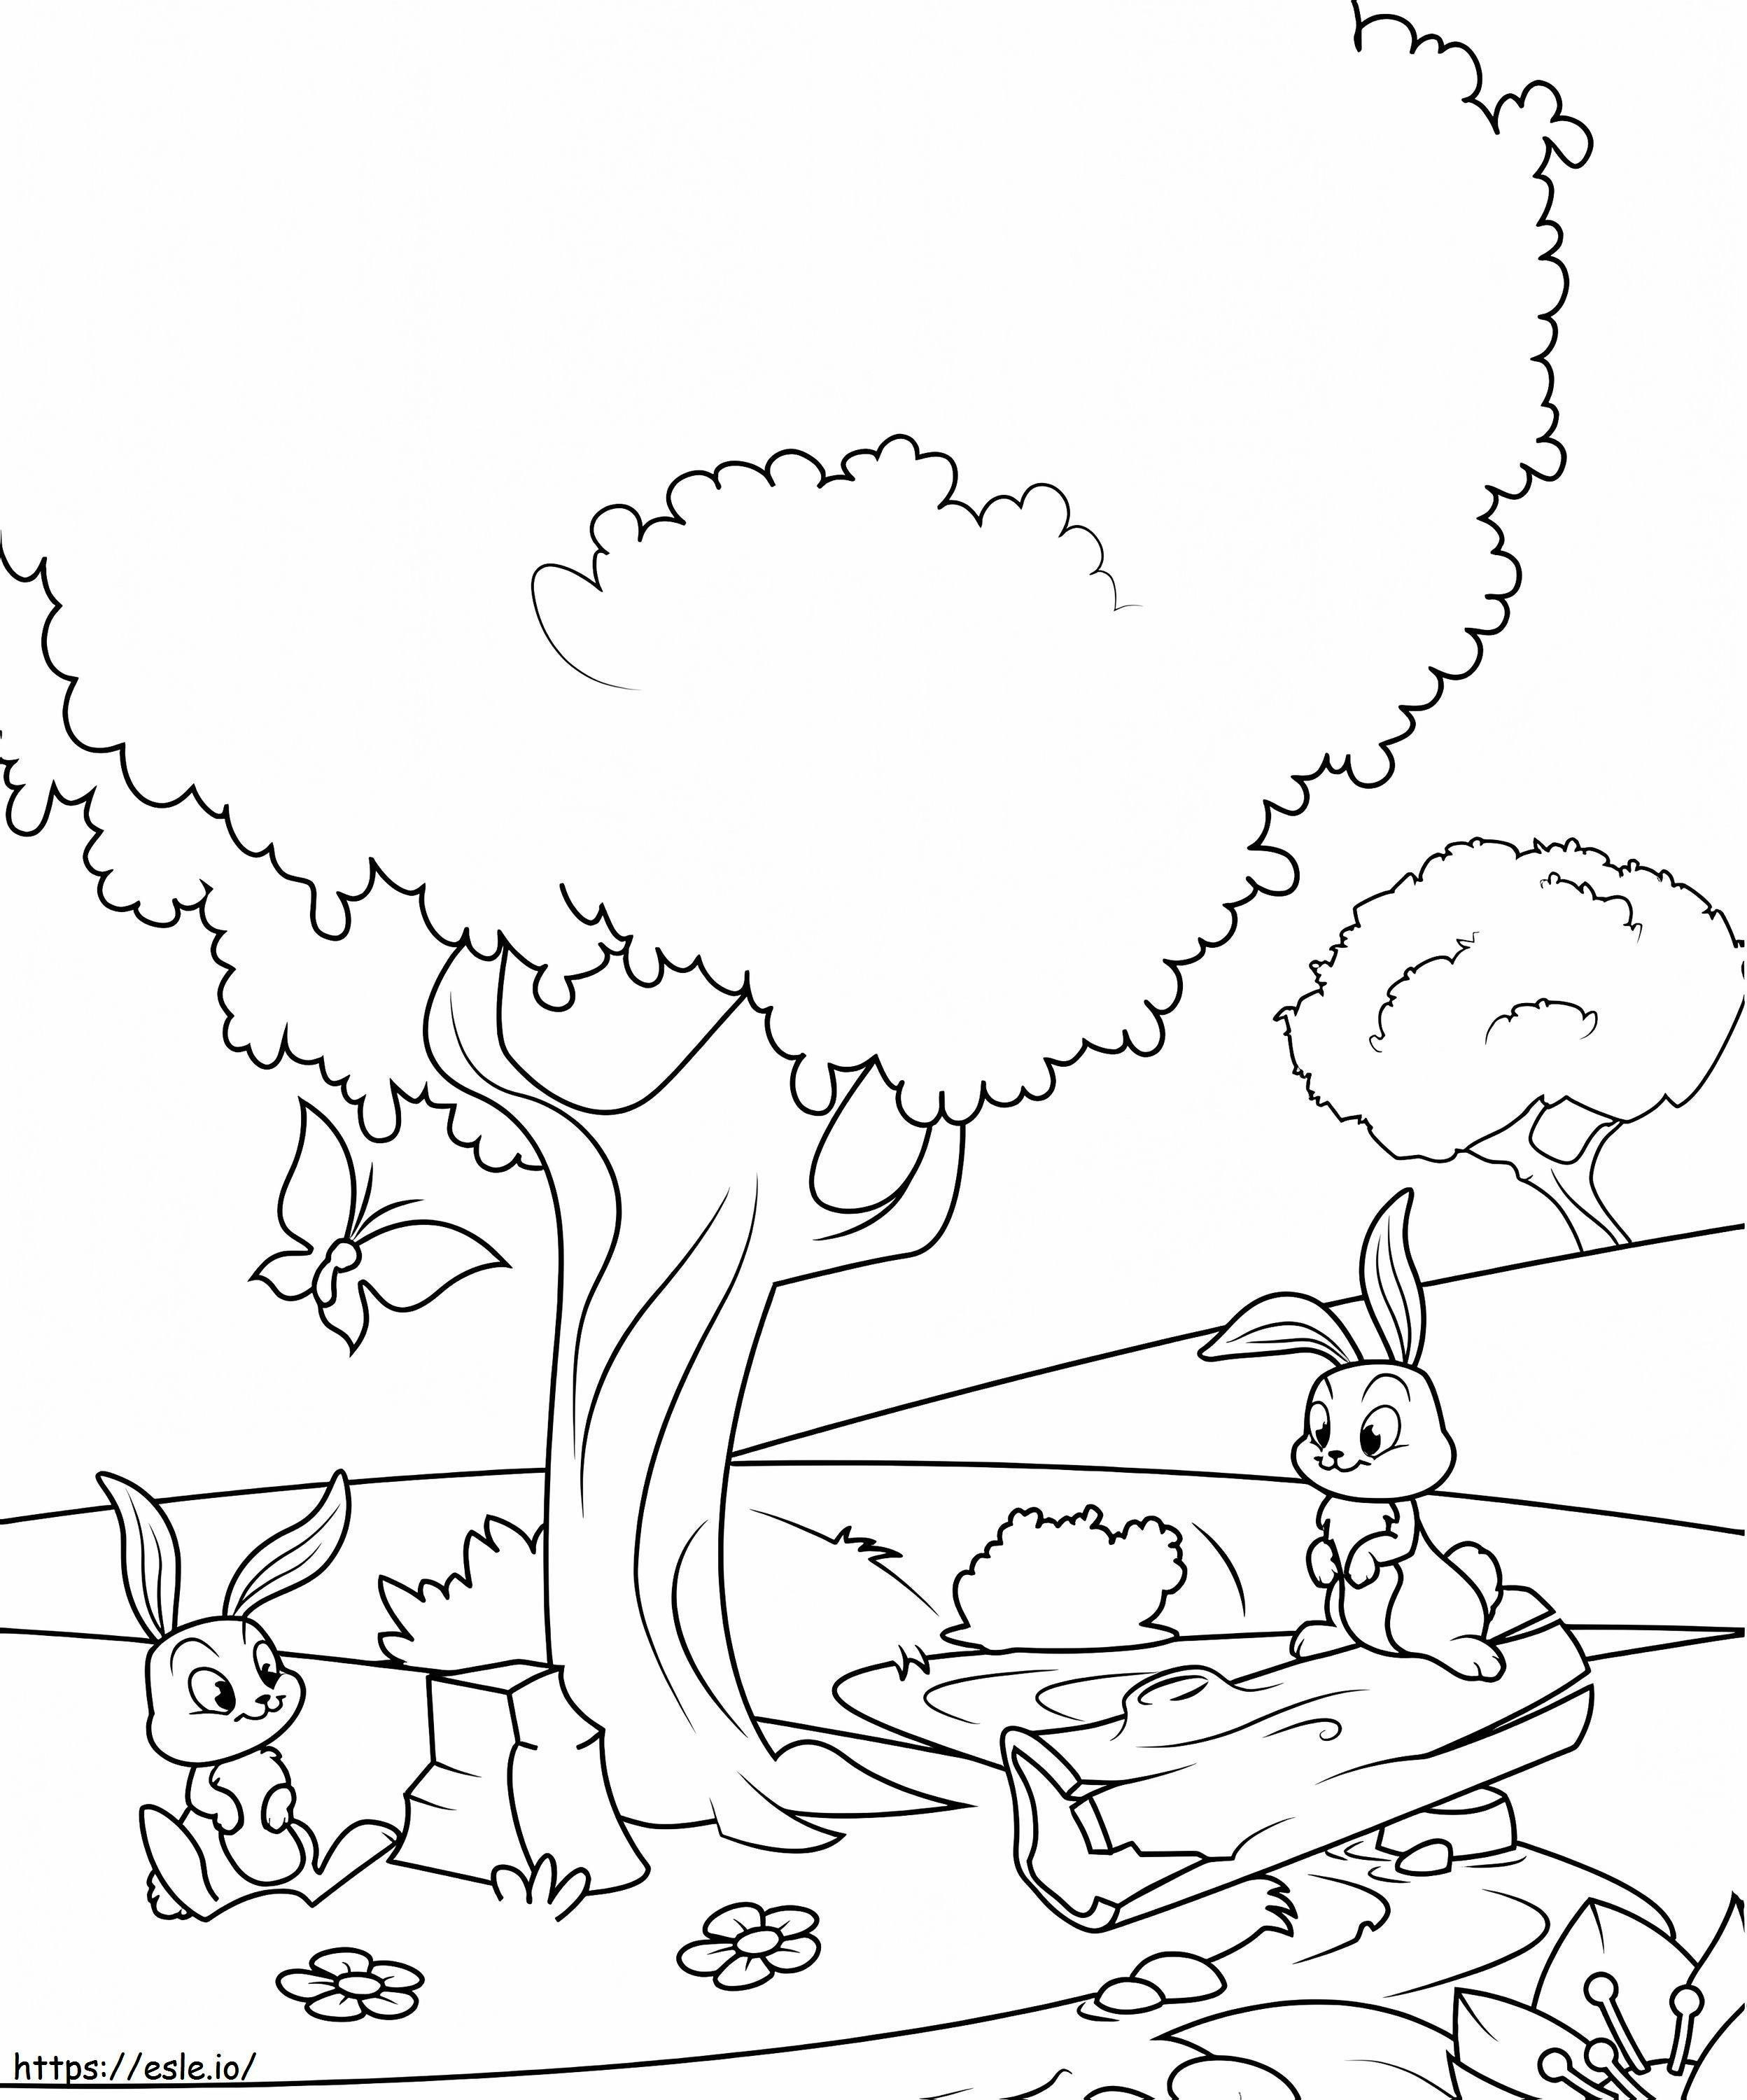 Coloriage Lapins sous l'arbre à imprimer dessin